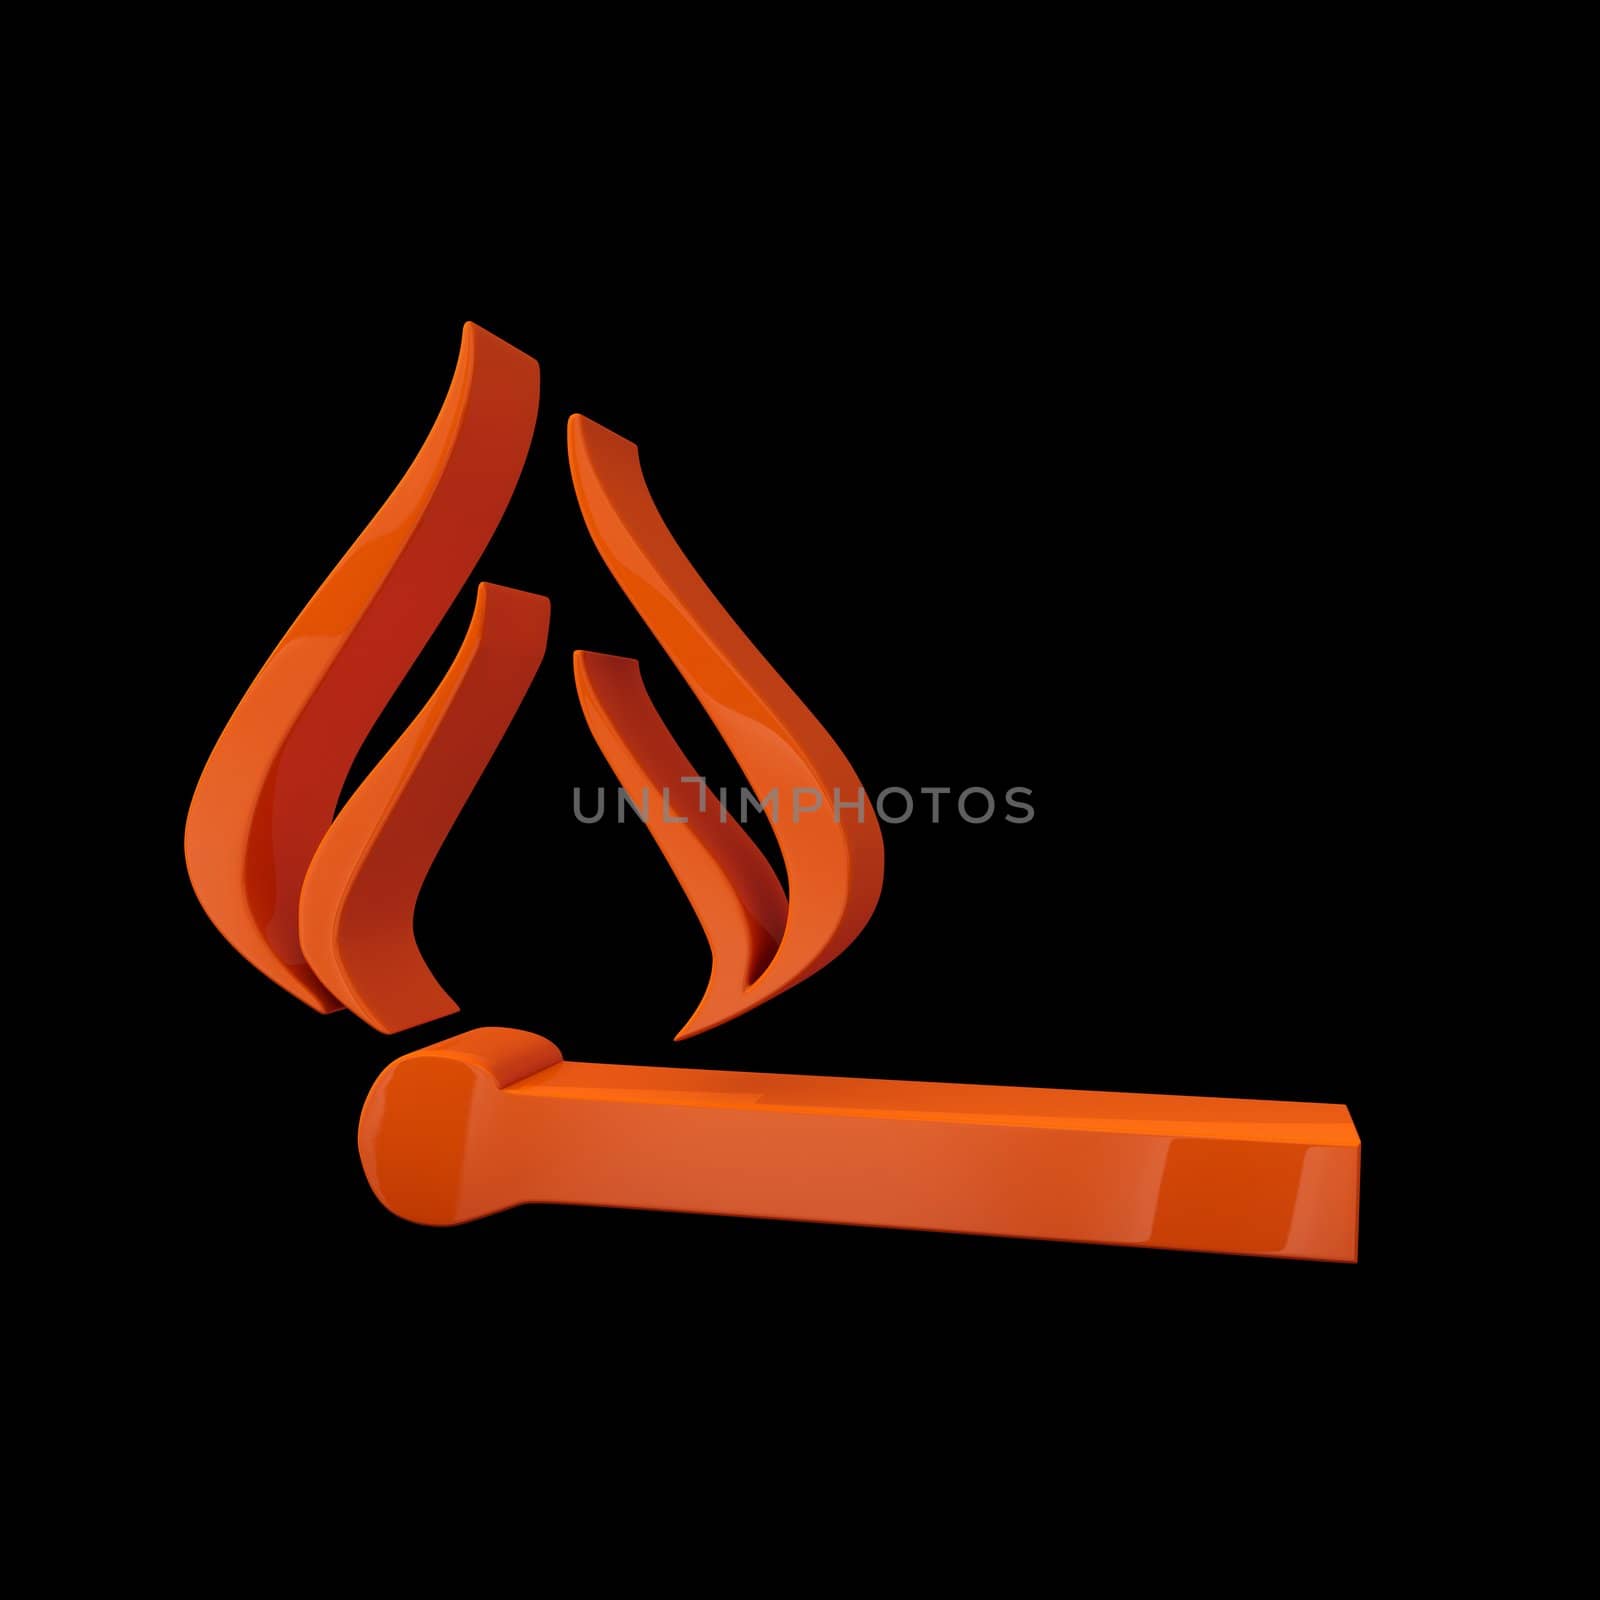 Matchstick fire by 3DAgentur